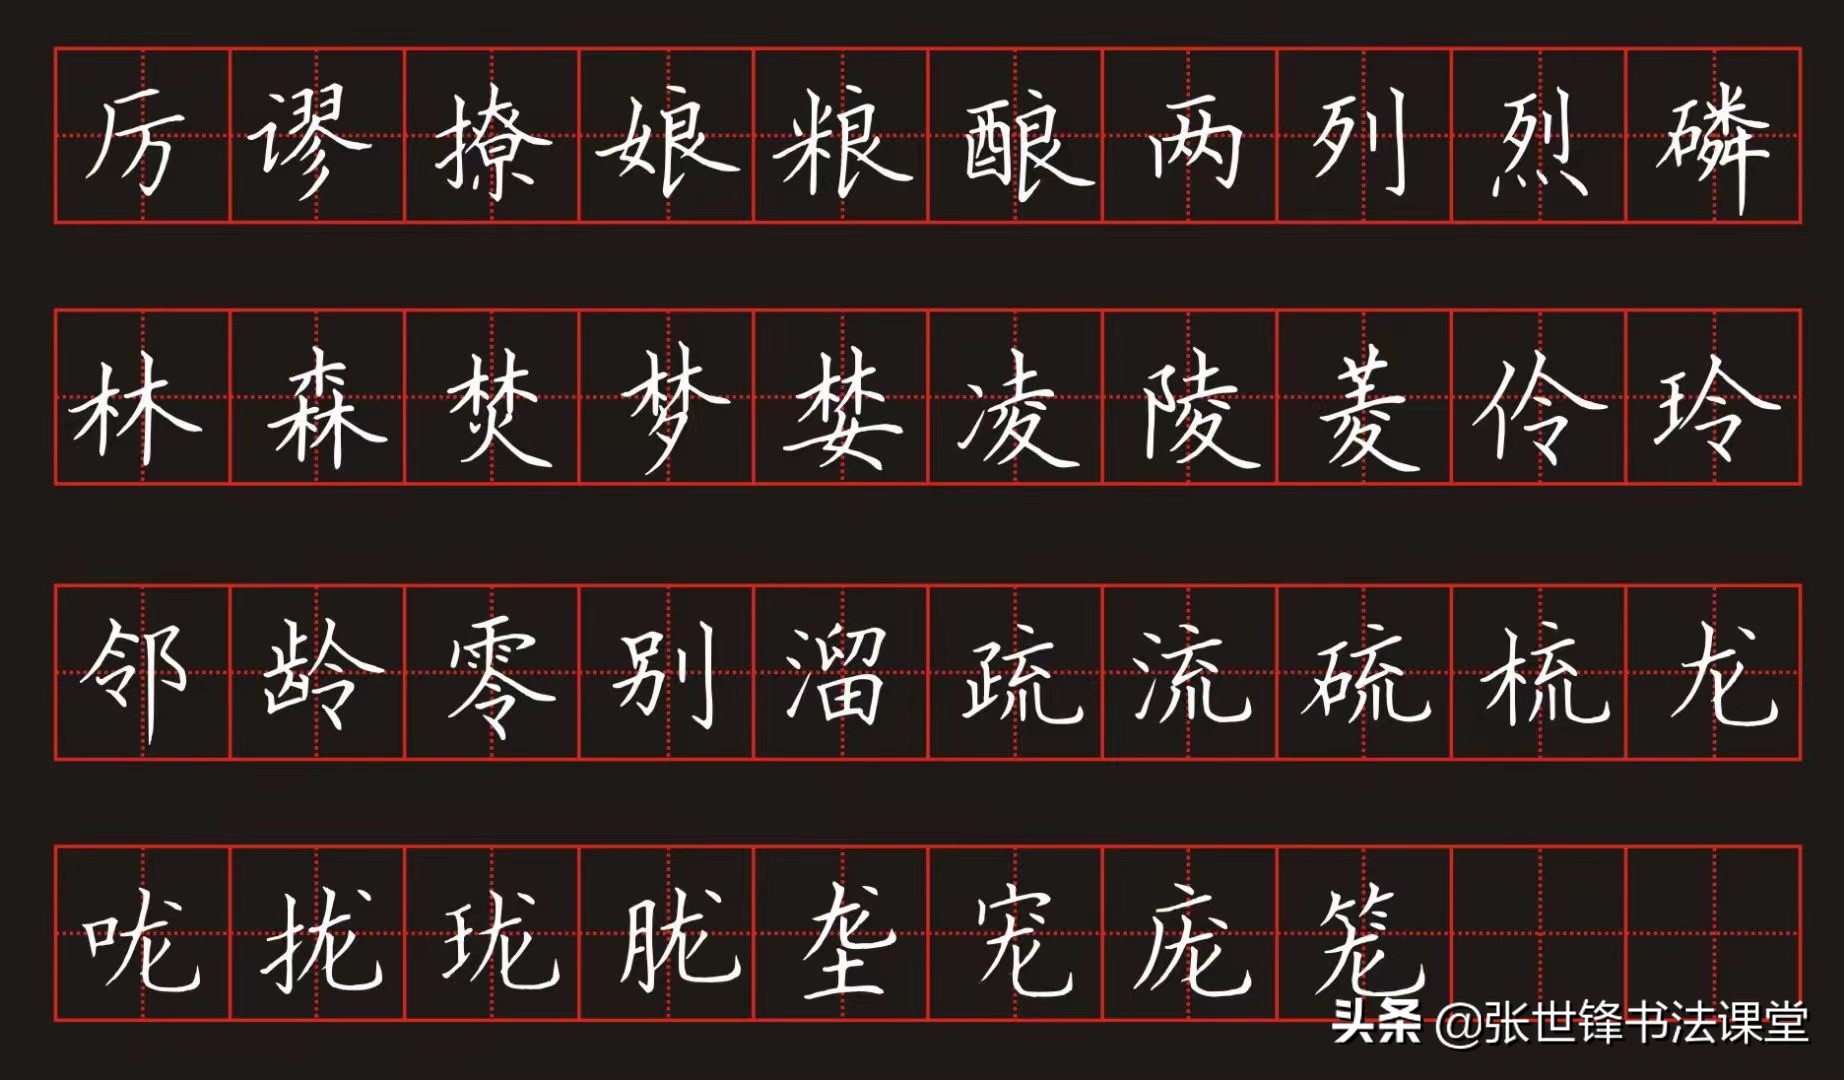 电影《亲密旅行》字幕书法，原来出自夏邑一位老师之手